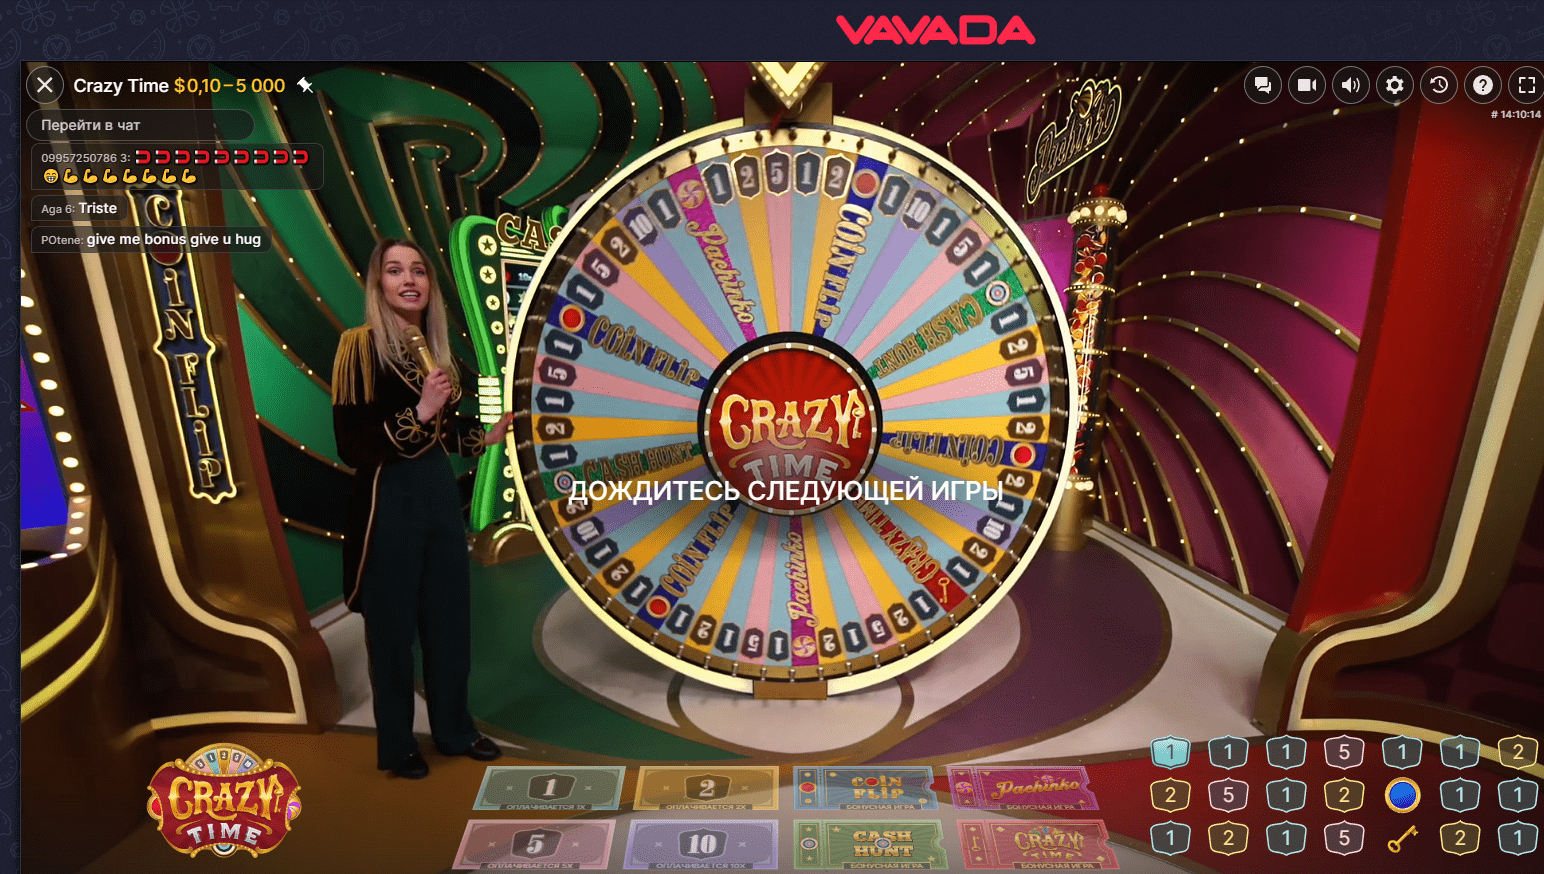 juego Crazy time en Vavada casino